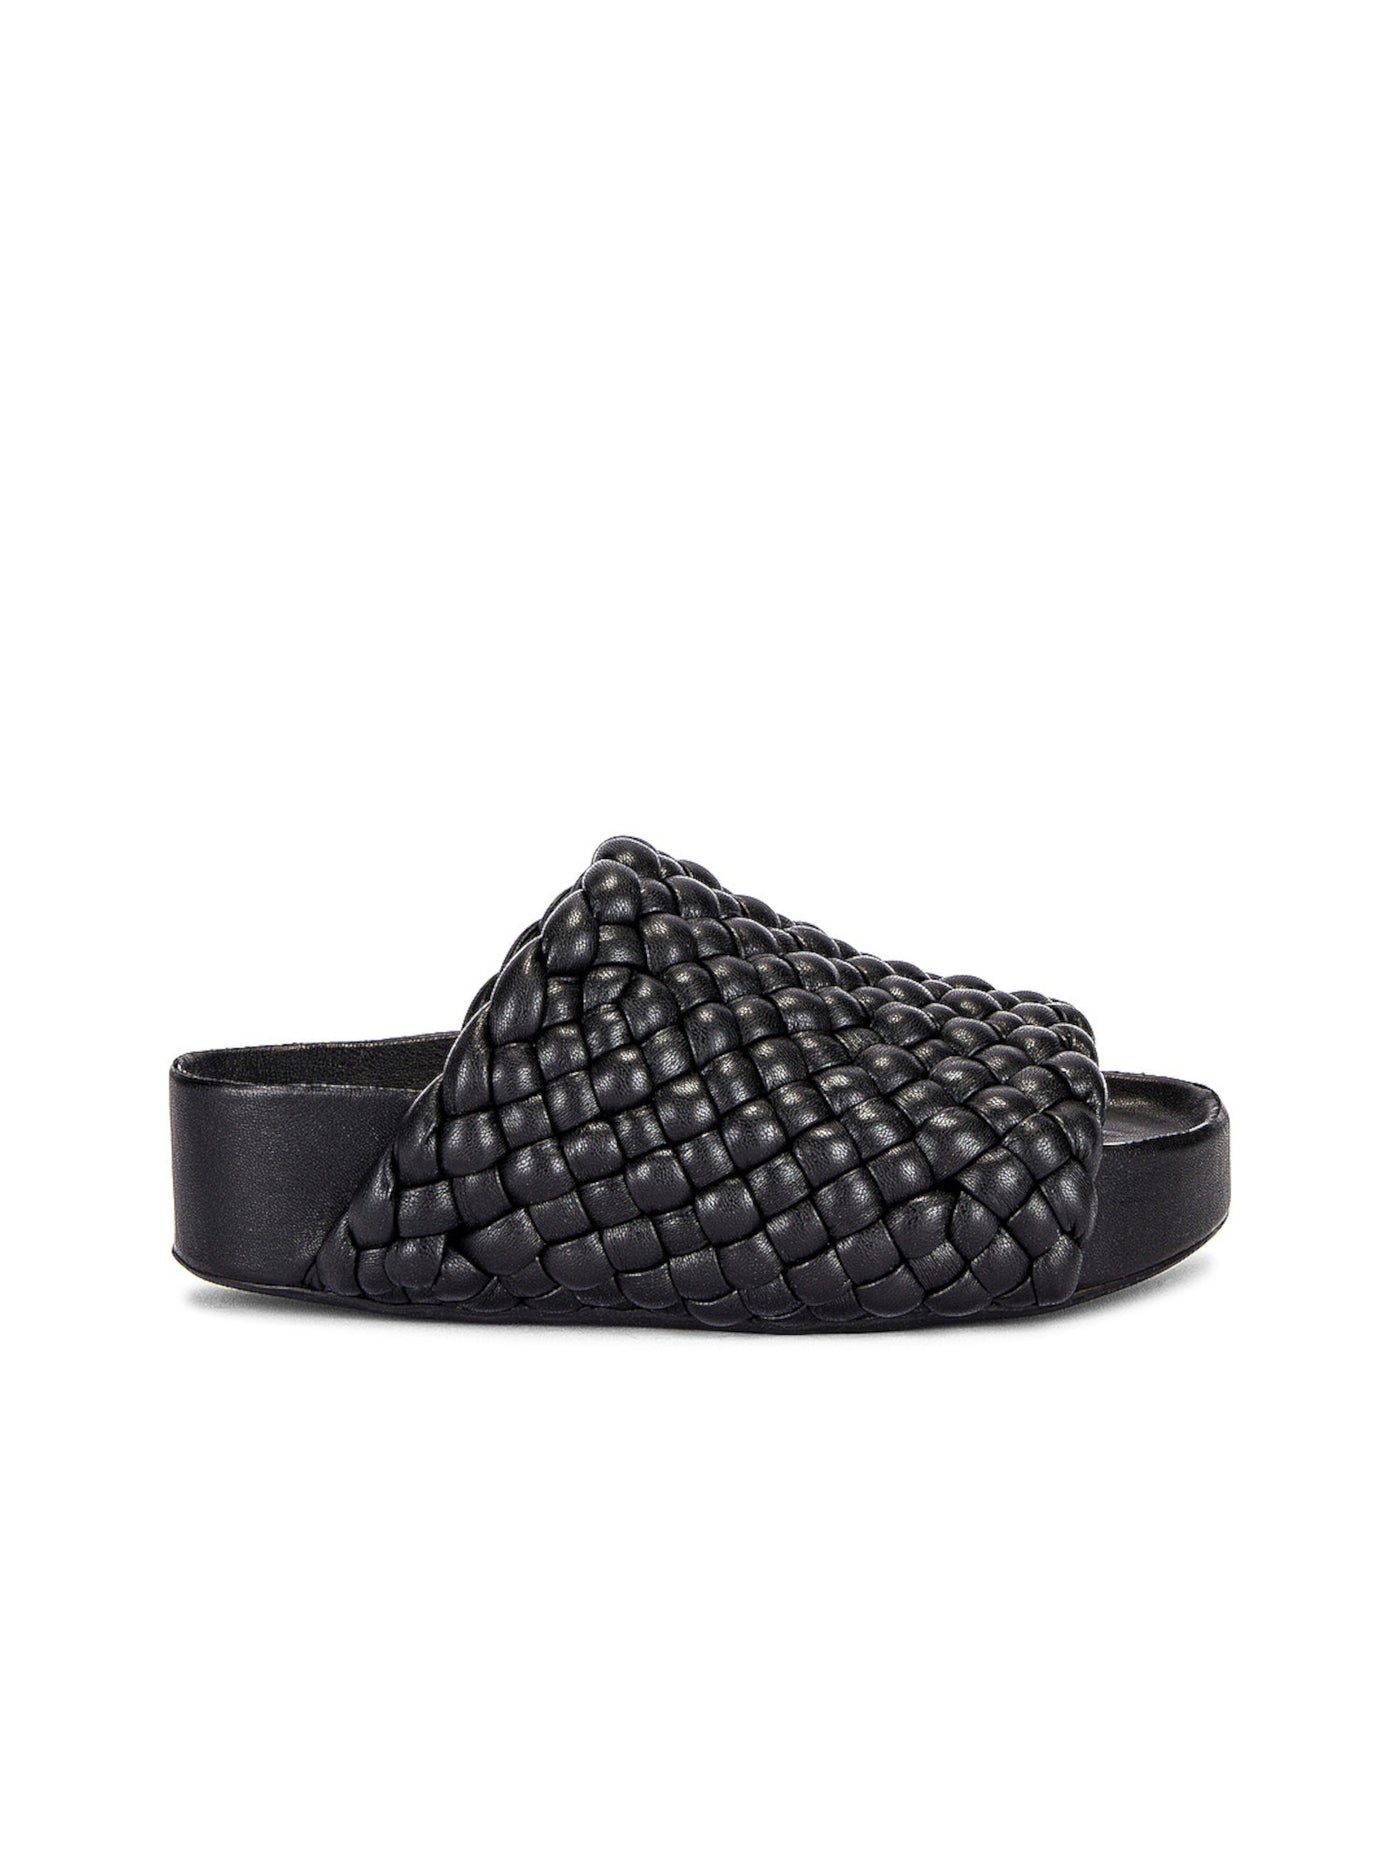 SIMON MILLER Womens Black 1-1/2" Platform Woven Comfort Round Toe Wedge Slip On Slide Sandals Shoes 36